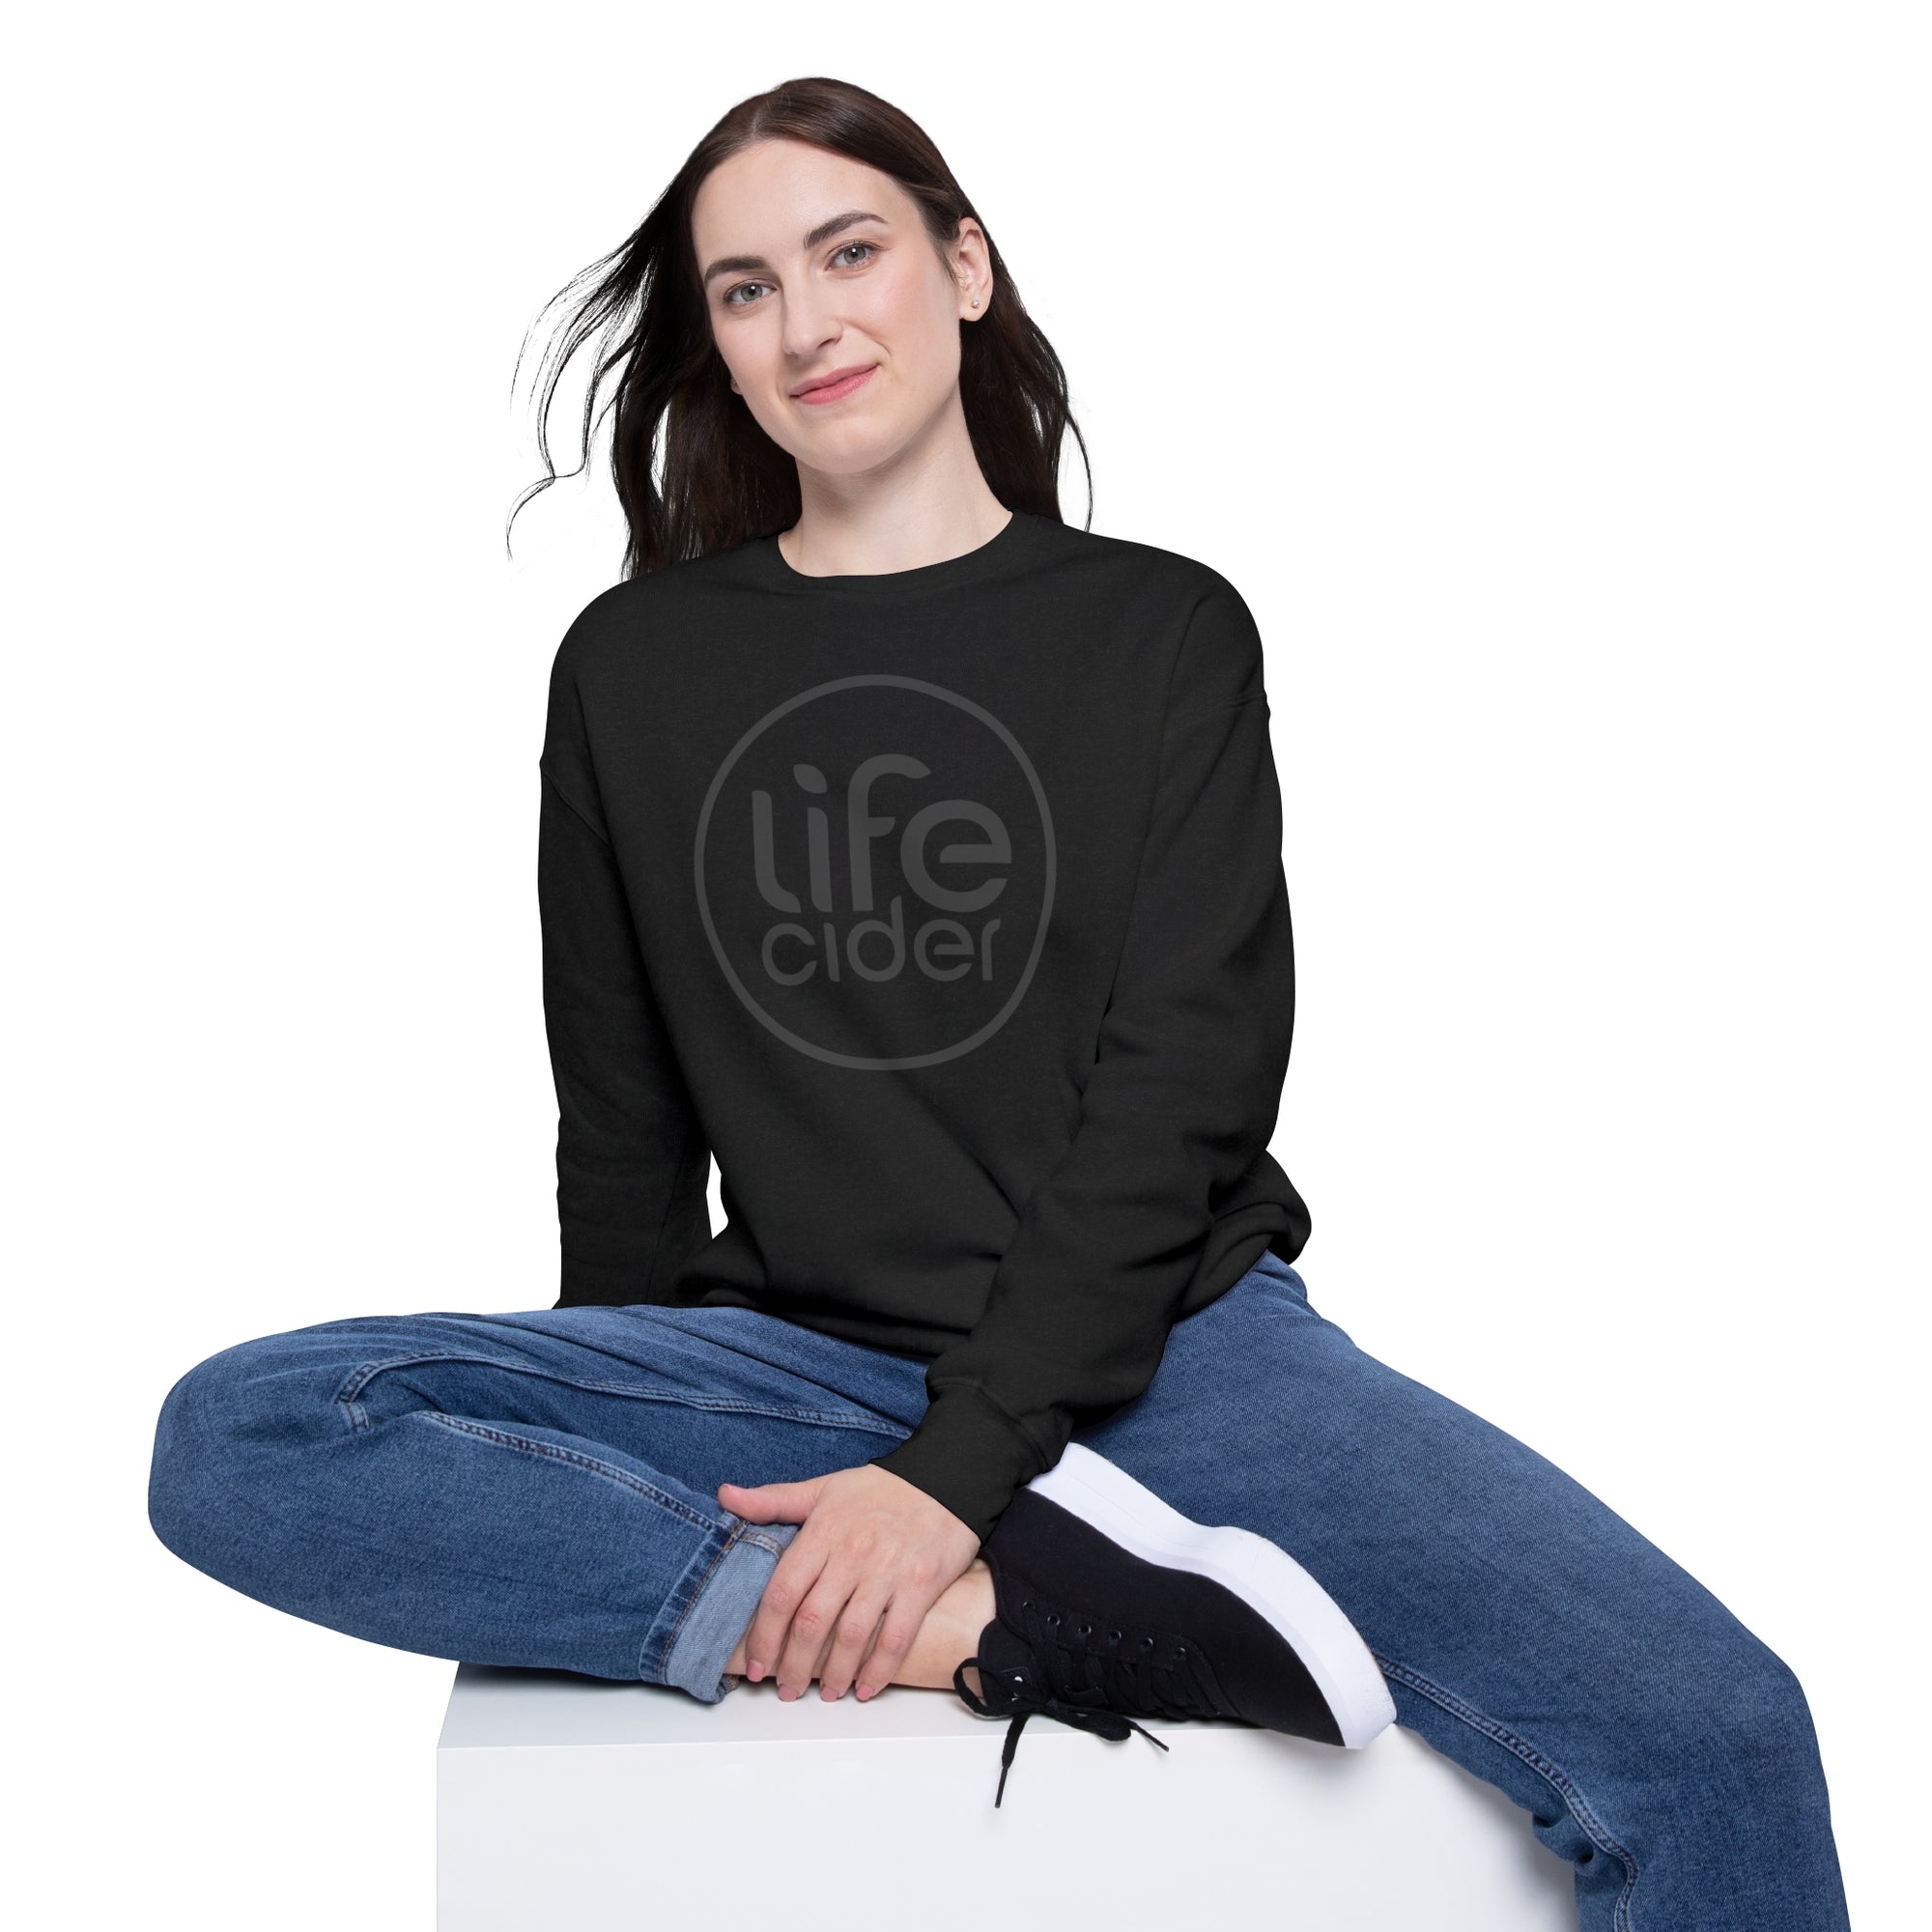 Life Cider Sweatshirt